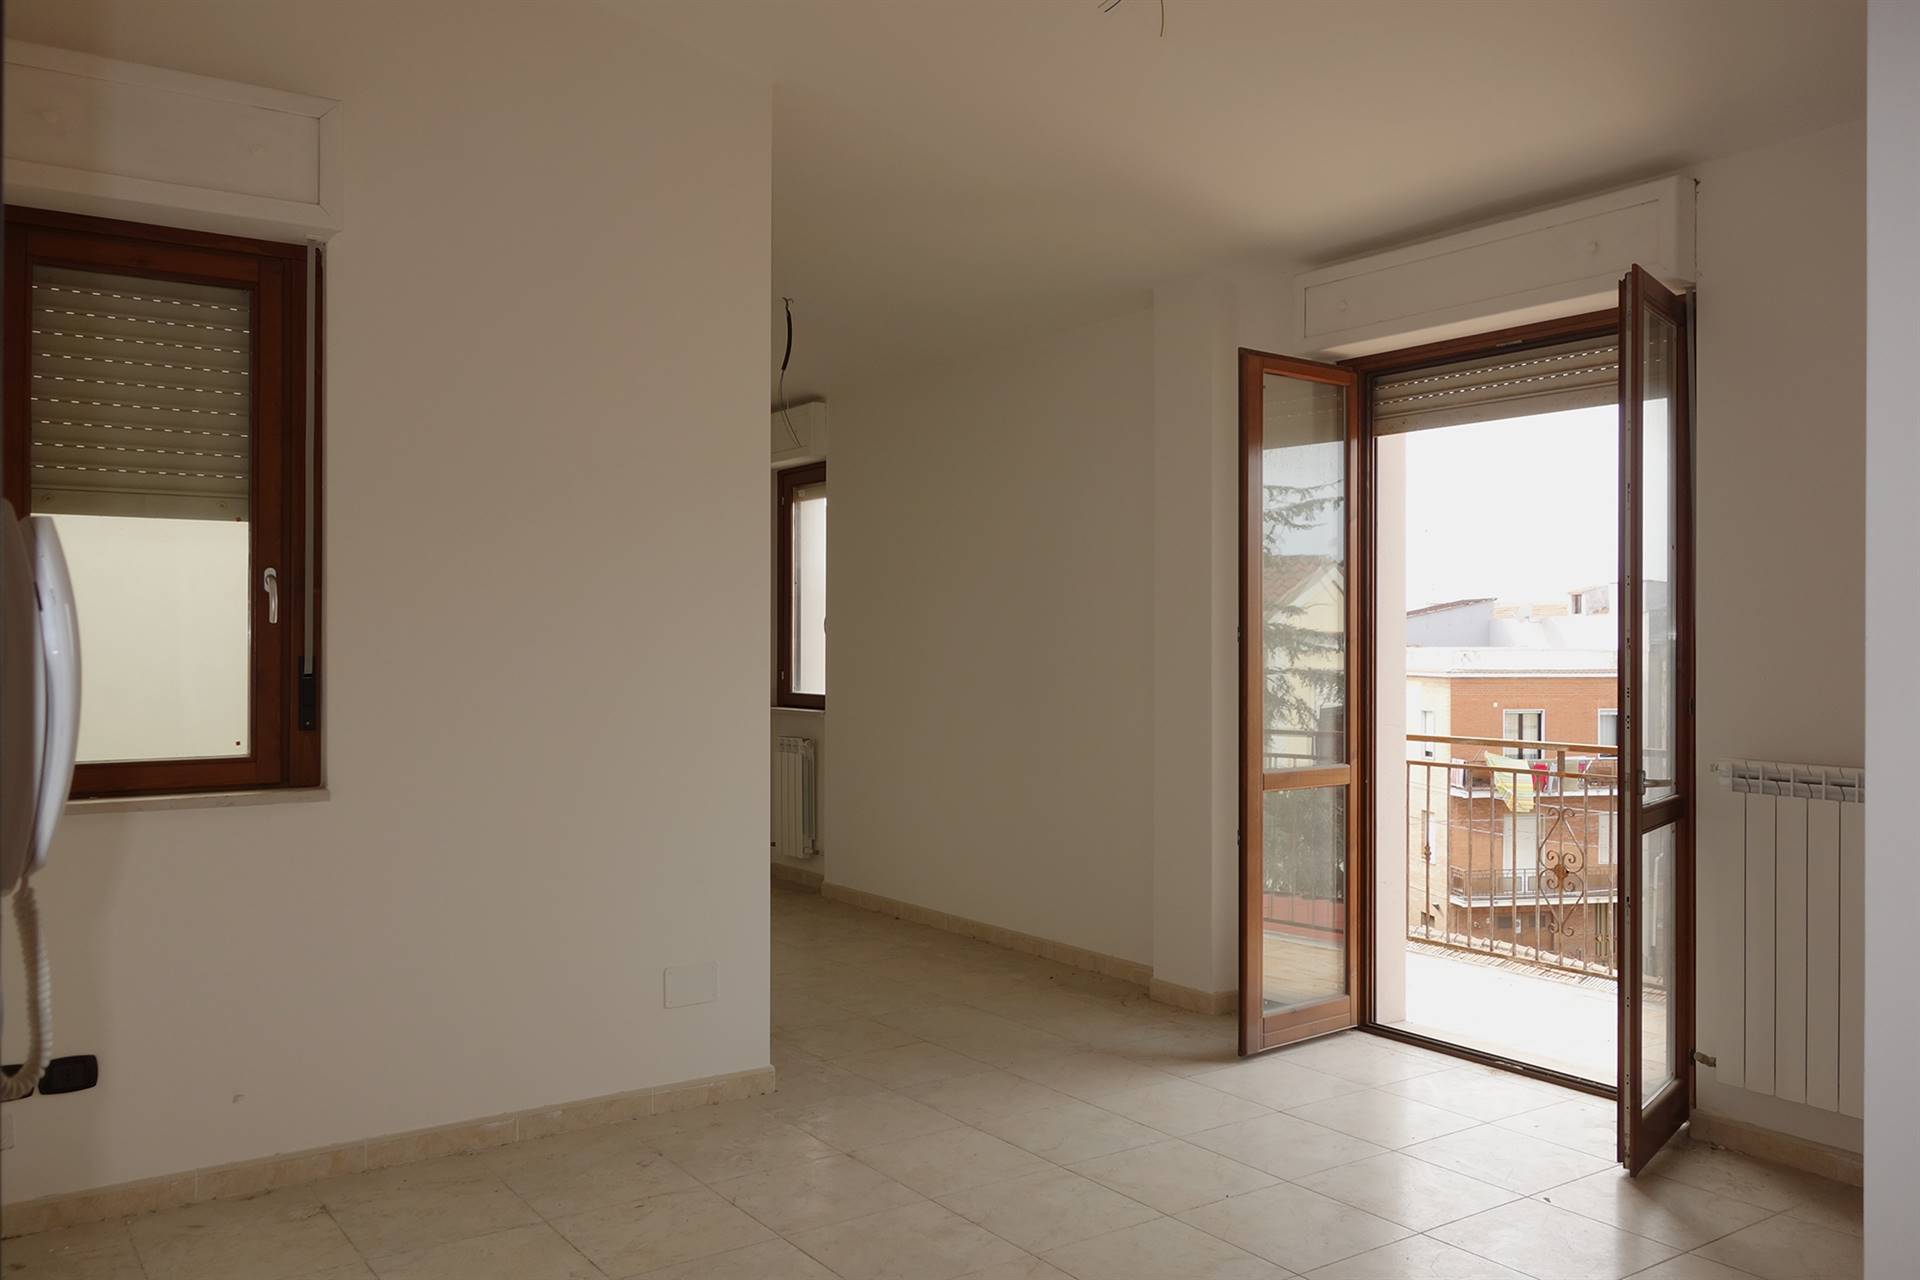 Appartamento in vendita a Torremaggiore, 3 locali, prezzo € 100.000 | PortaleAgenzieImmobiliari.it